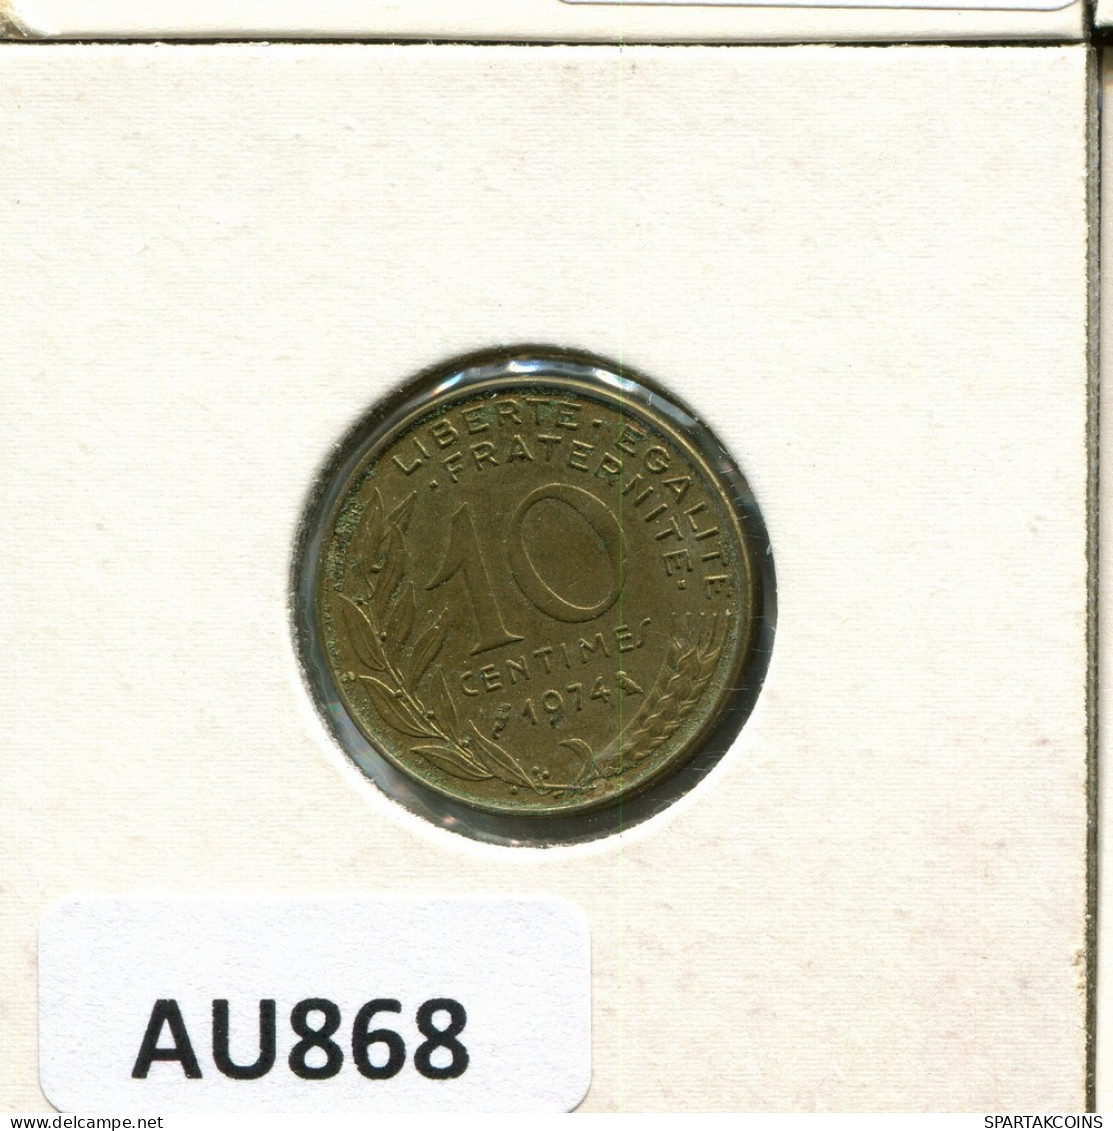 10 CENTIMES 1974 FRANCE Coin #AU868.U.A - 10 Centimes